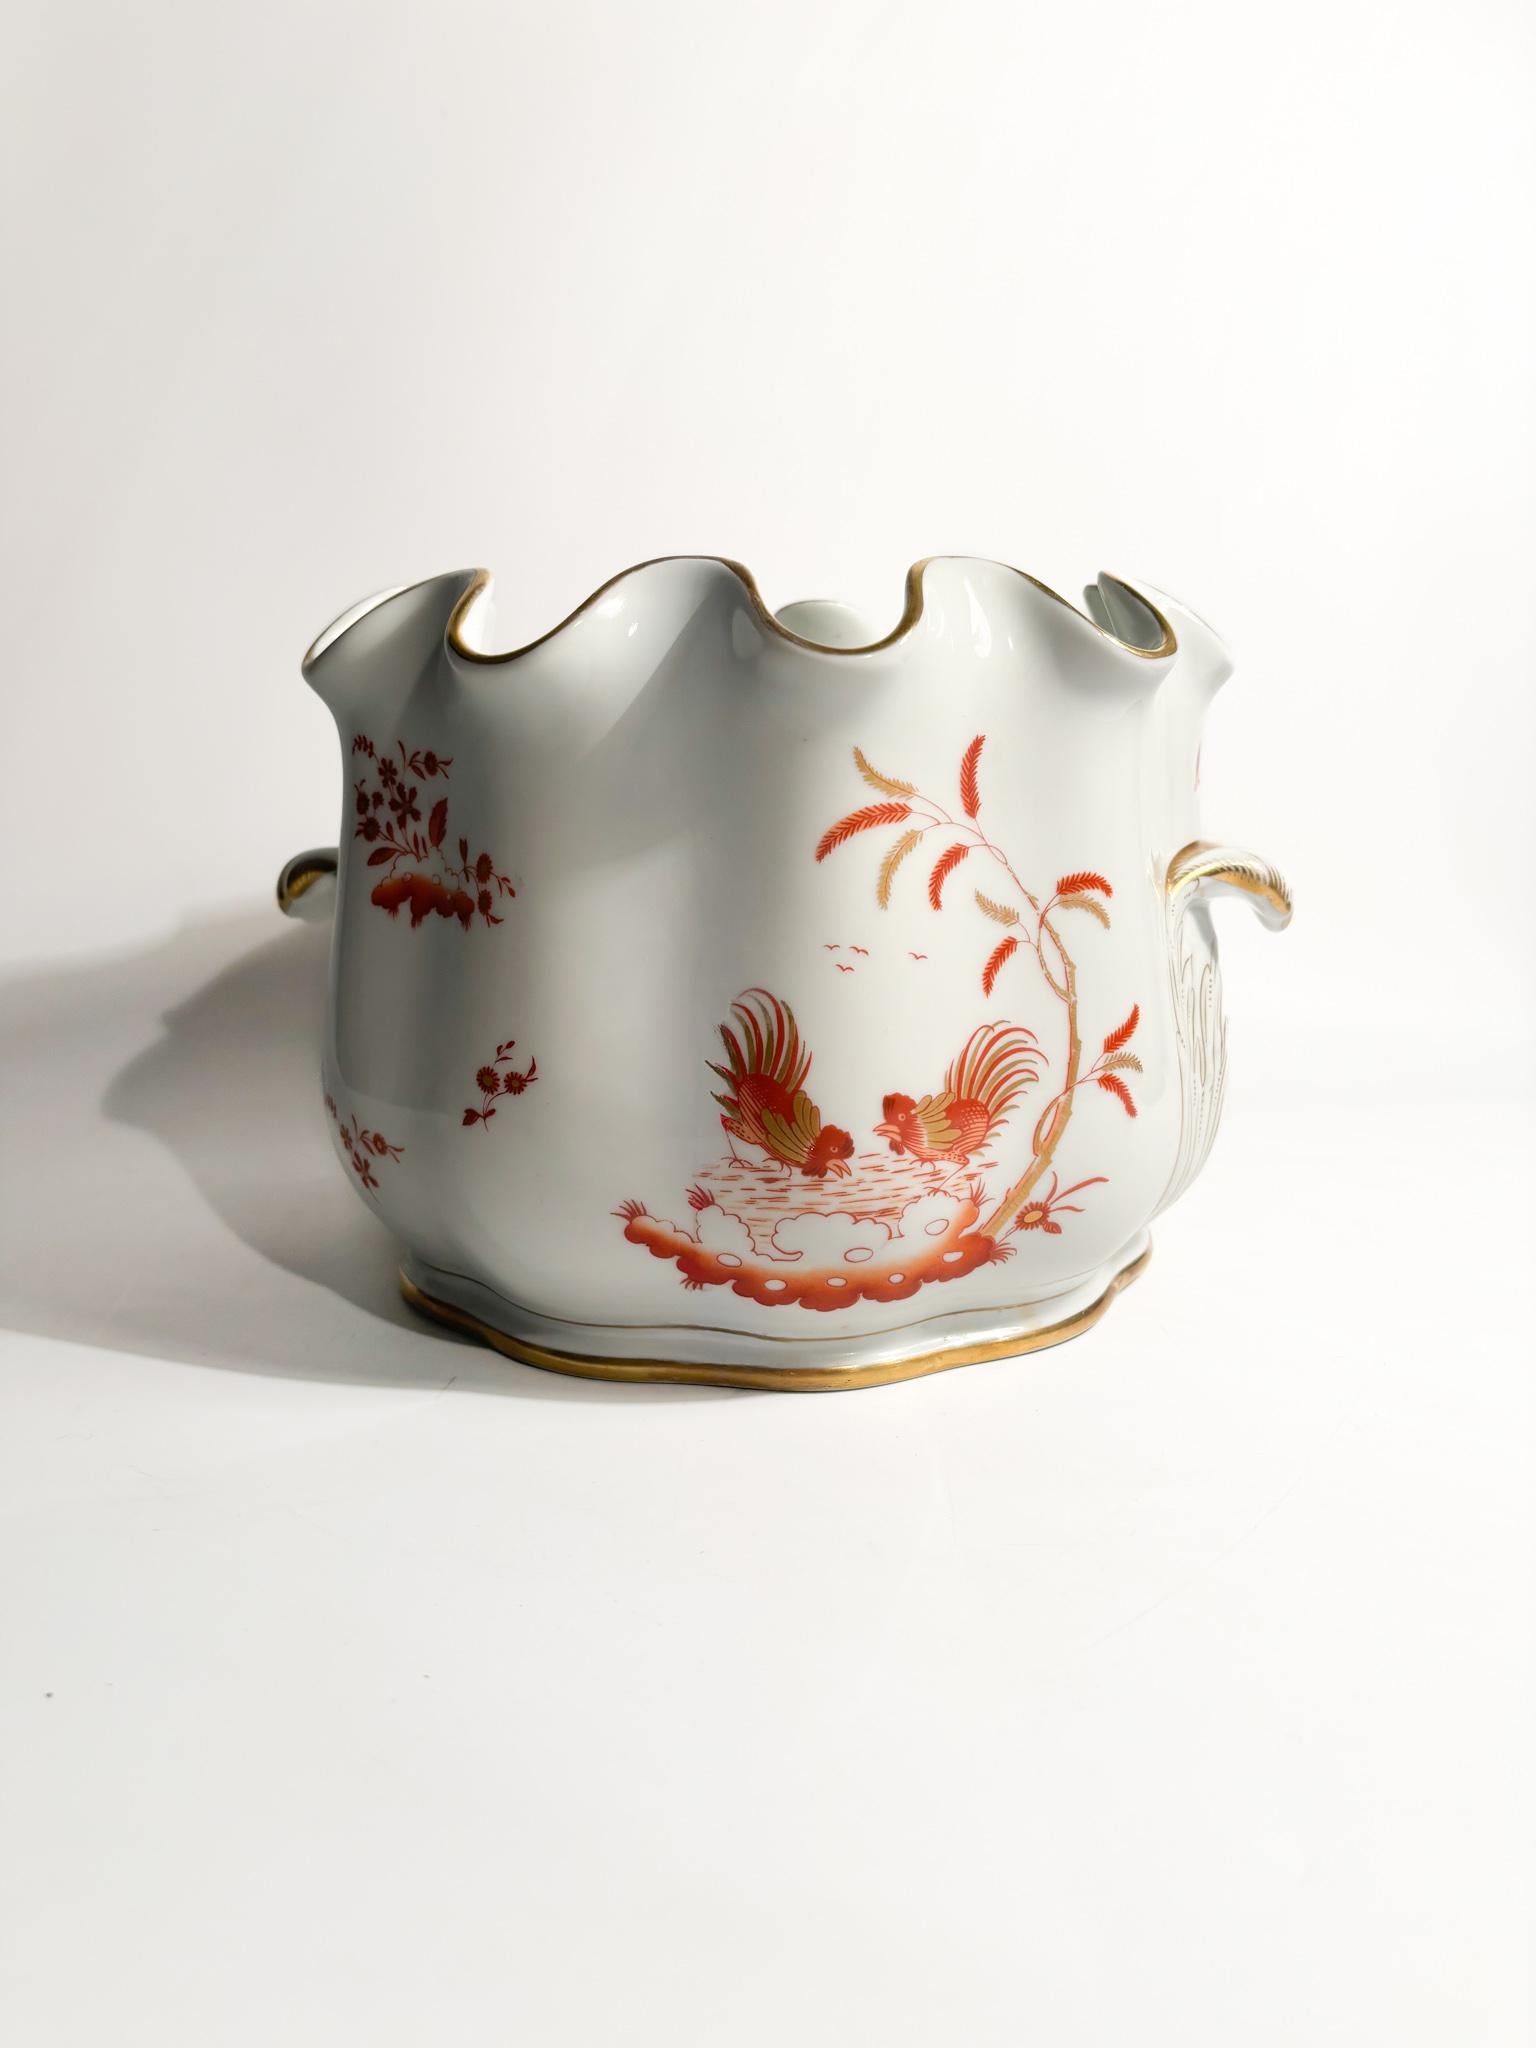 Vase en porcelaine rafraîchie de Ginori Doccia, collection Galli Rossi, réalisé dans les années 1950

Ø cm 25 h cm 17

Ginori Doccia est un type de porcelaine italienne produite dans la ville de Doccia, près de Florence, depuis 1737. Il est connu